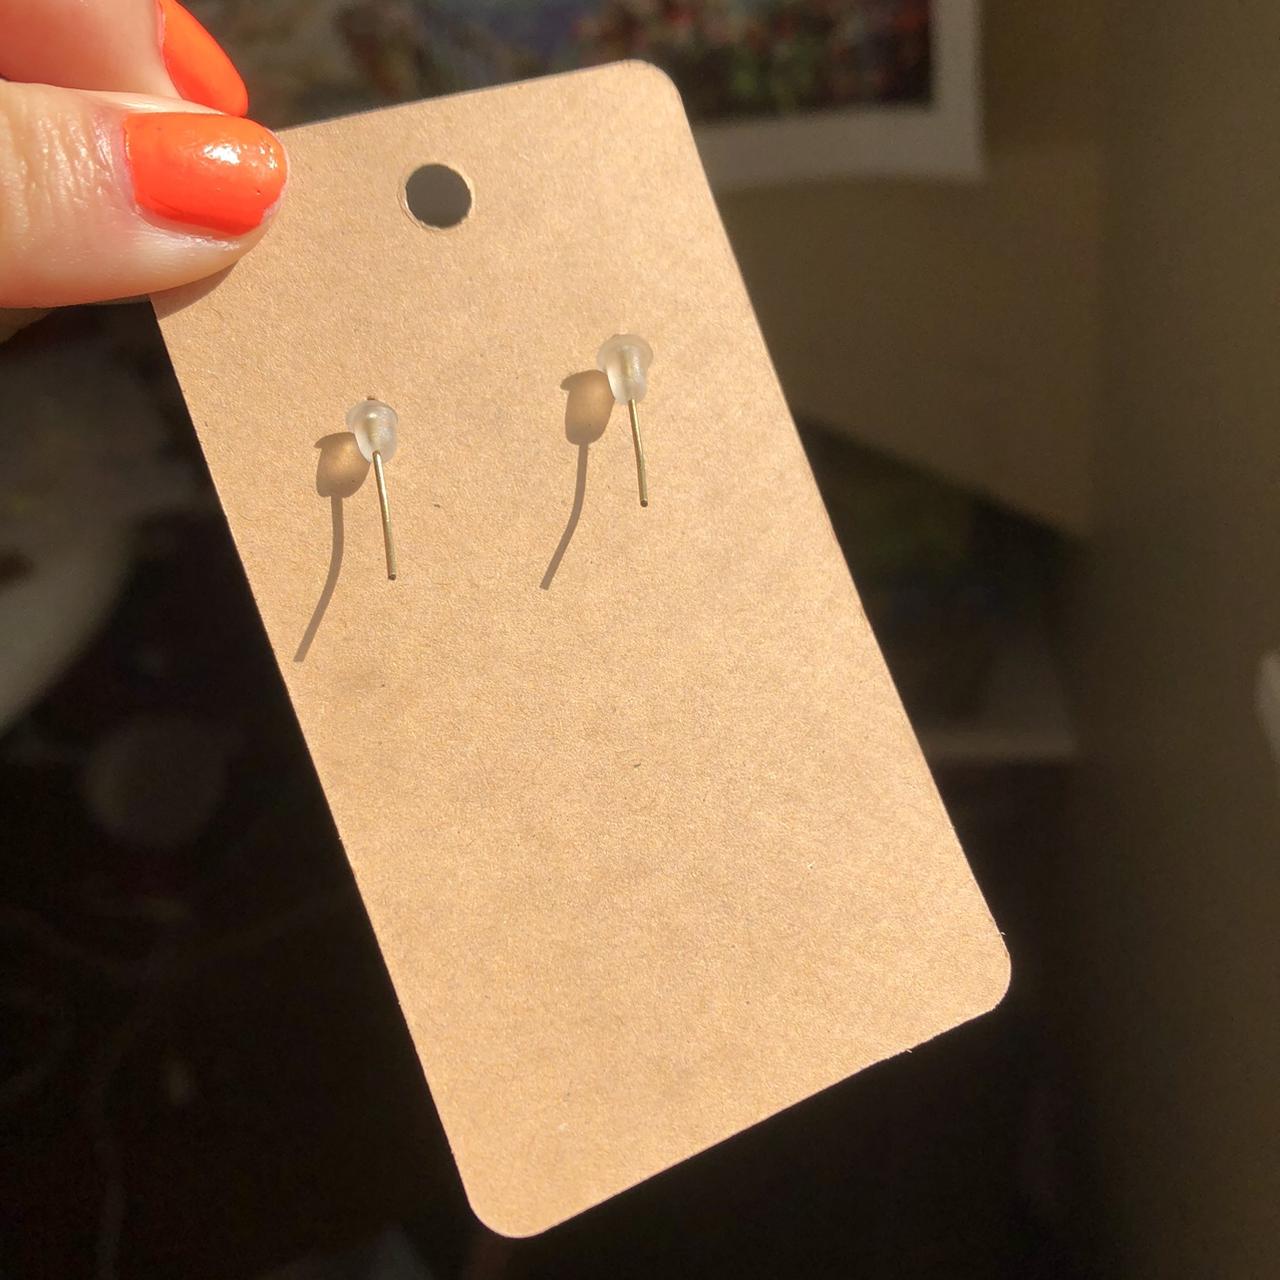 uno reverse card shrinky dink earrings 💗 • - Depop